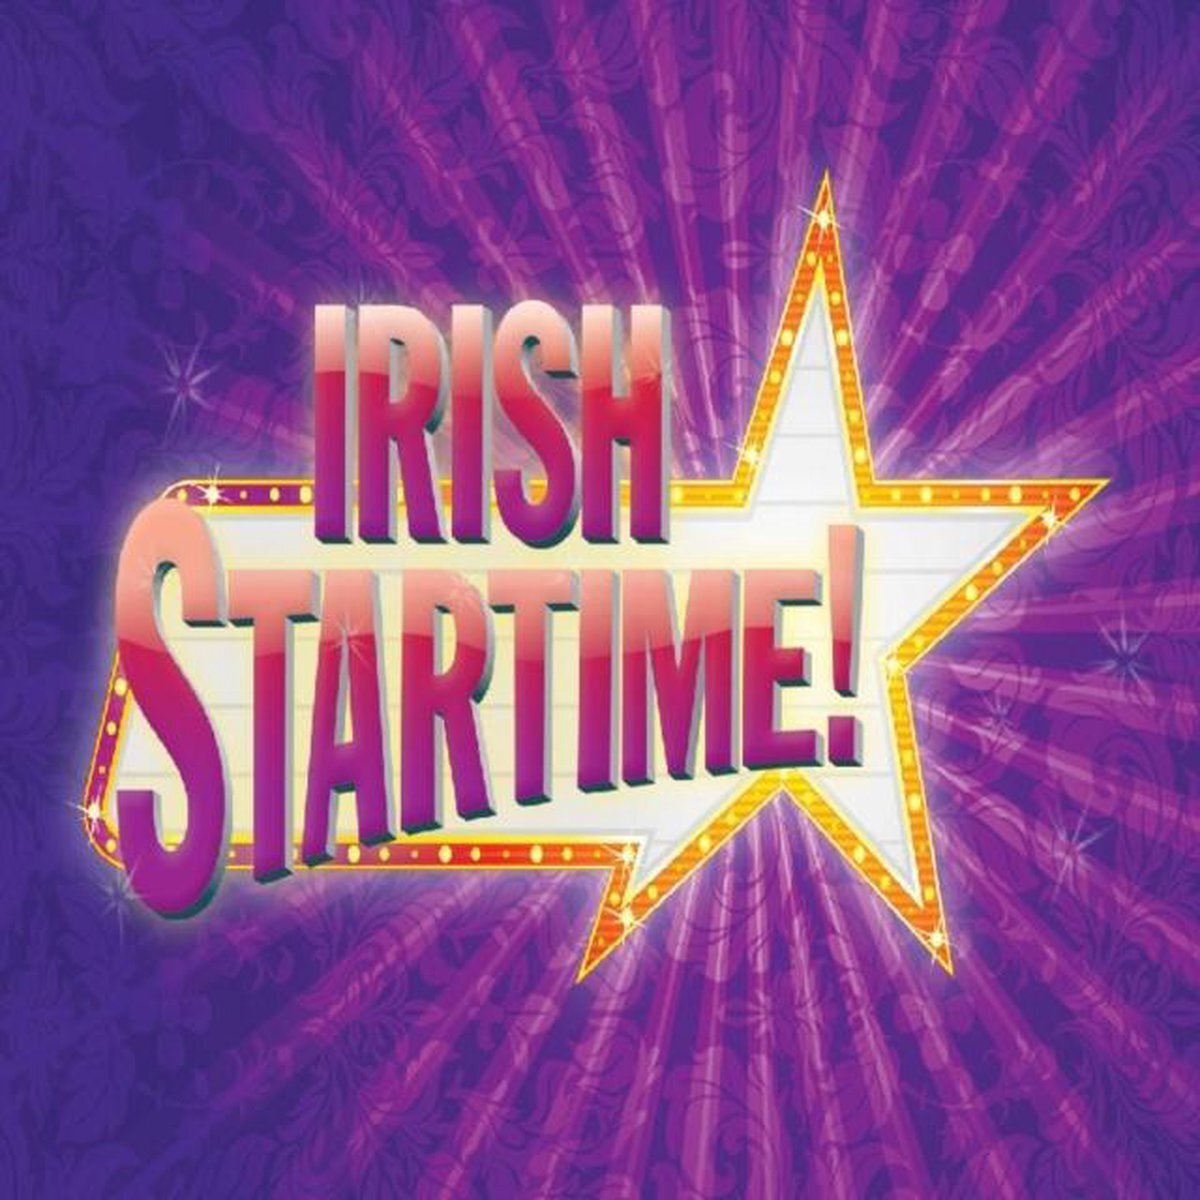 Music&Words Irish Startime